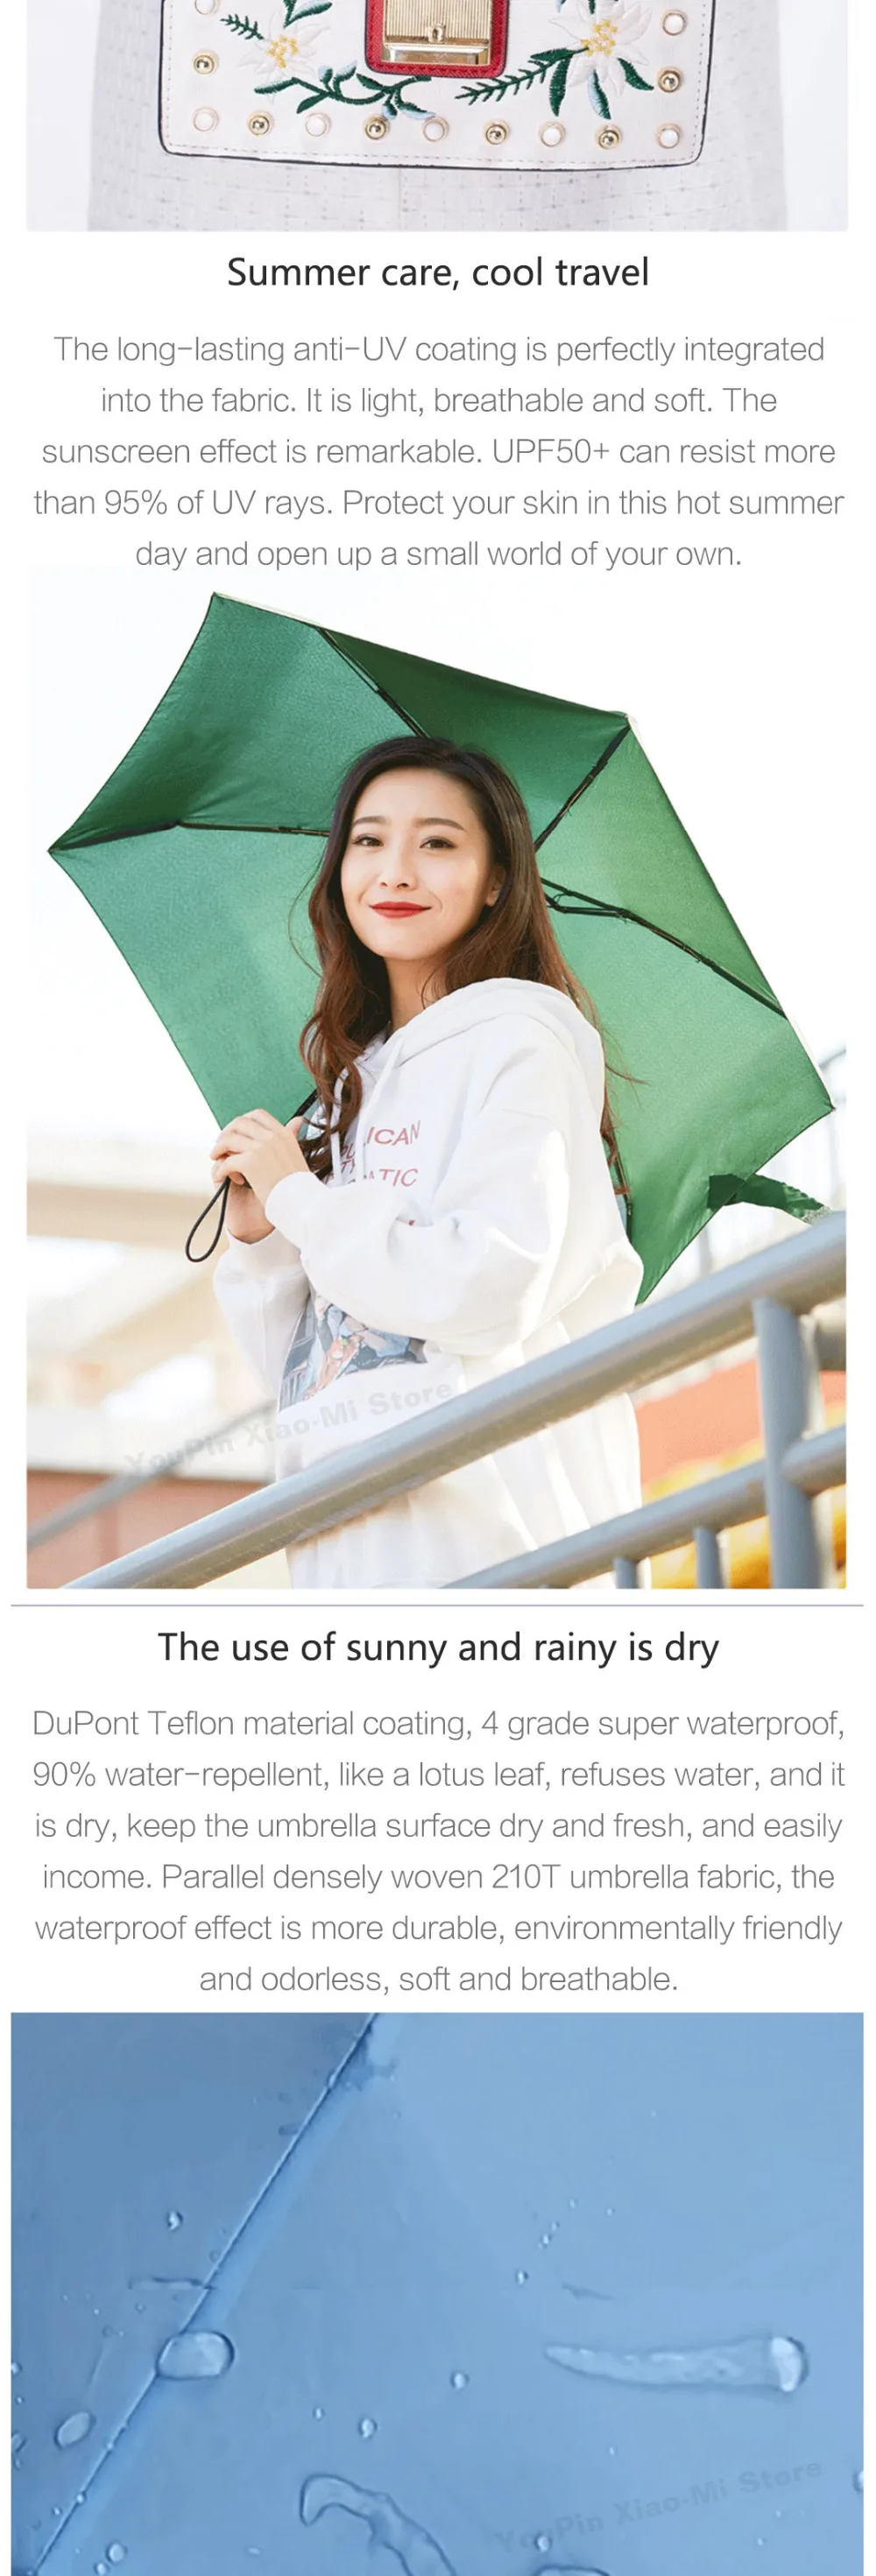 Xiaomi Зонт 50% складные супер короткие солнцезащитные зонты переносные сверхлегкие дождливые Зонты водонепроницаемые ветрозащитные